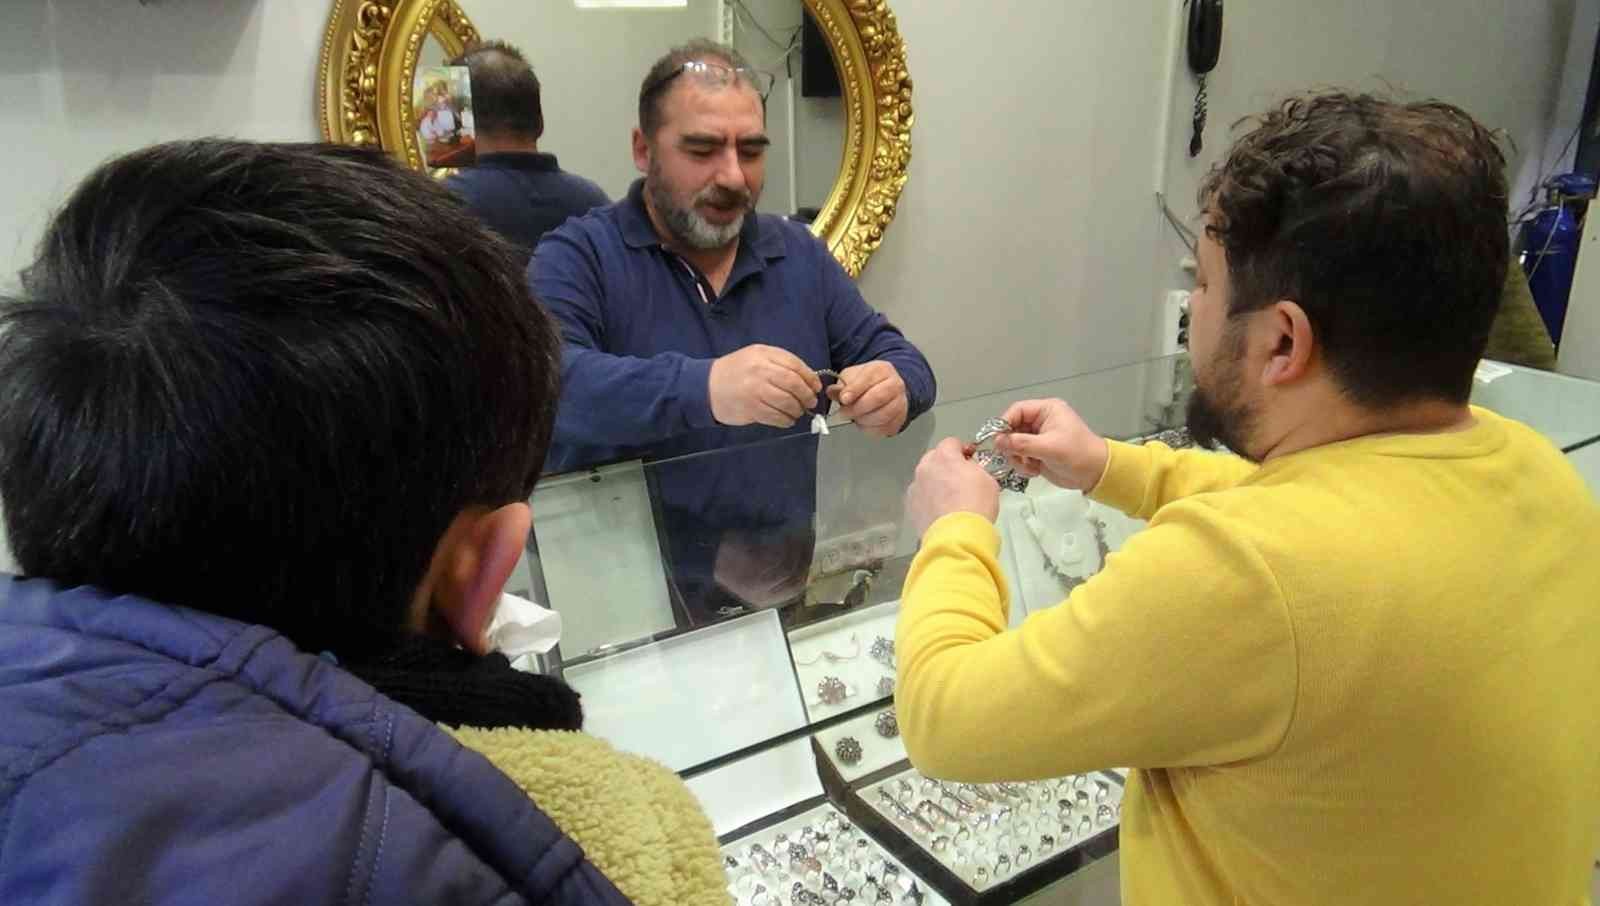 (ÖZEL) Osmanlı mücevherlerine ilgi #kutahya